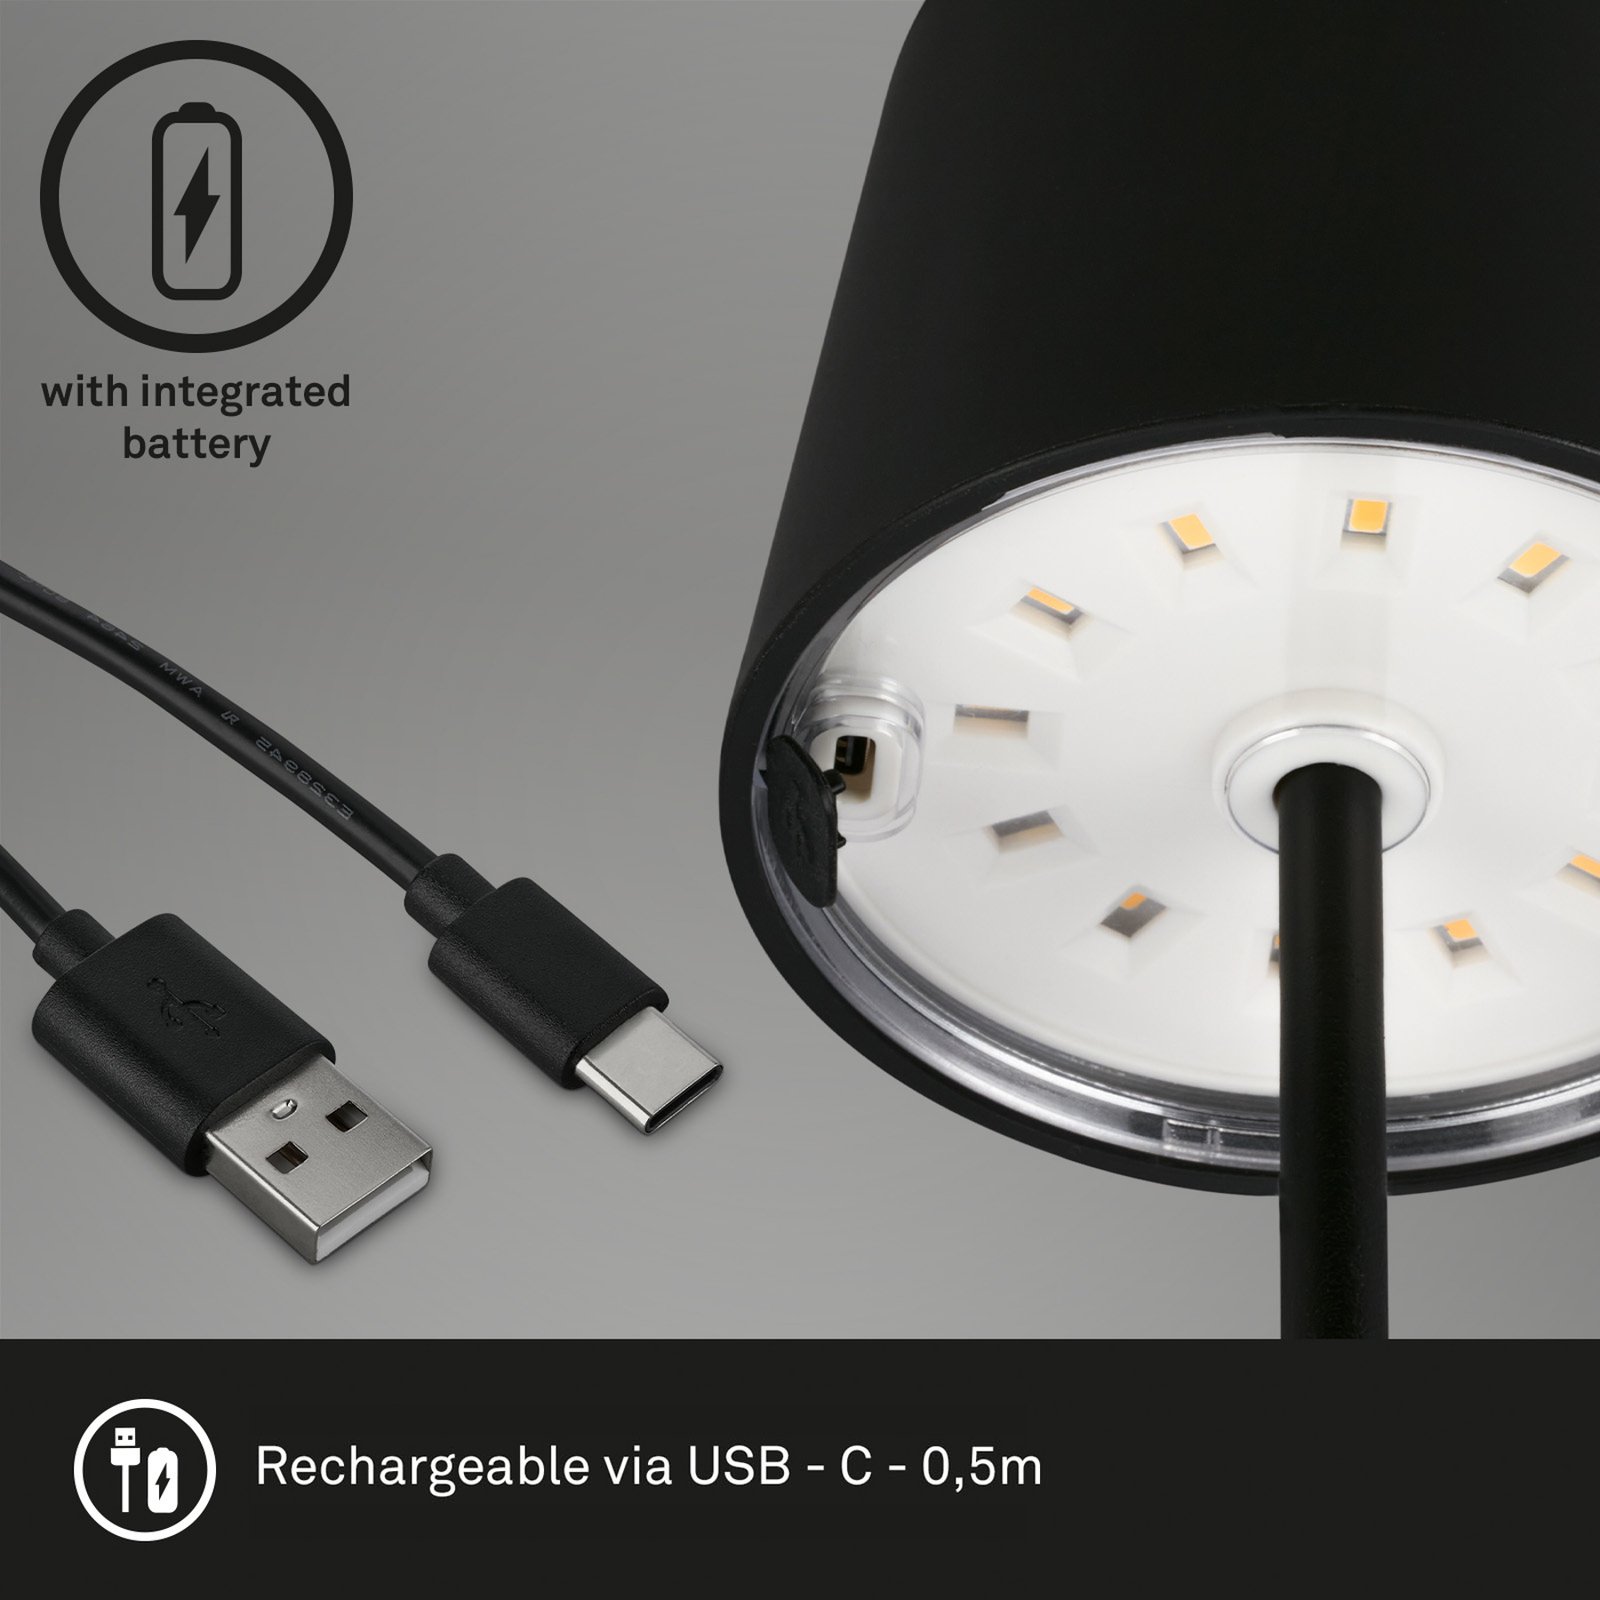 Piha LED asztali lámpa újratölthető akkumulátorral, fekete színben